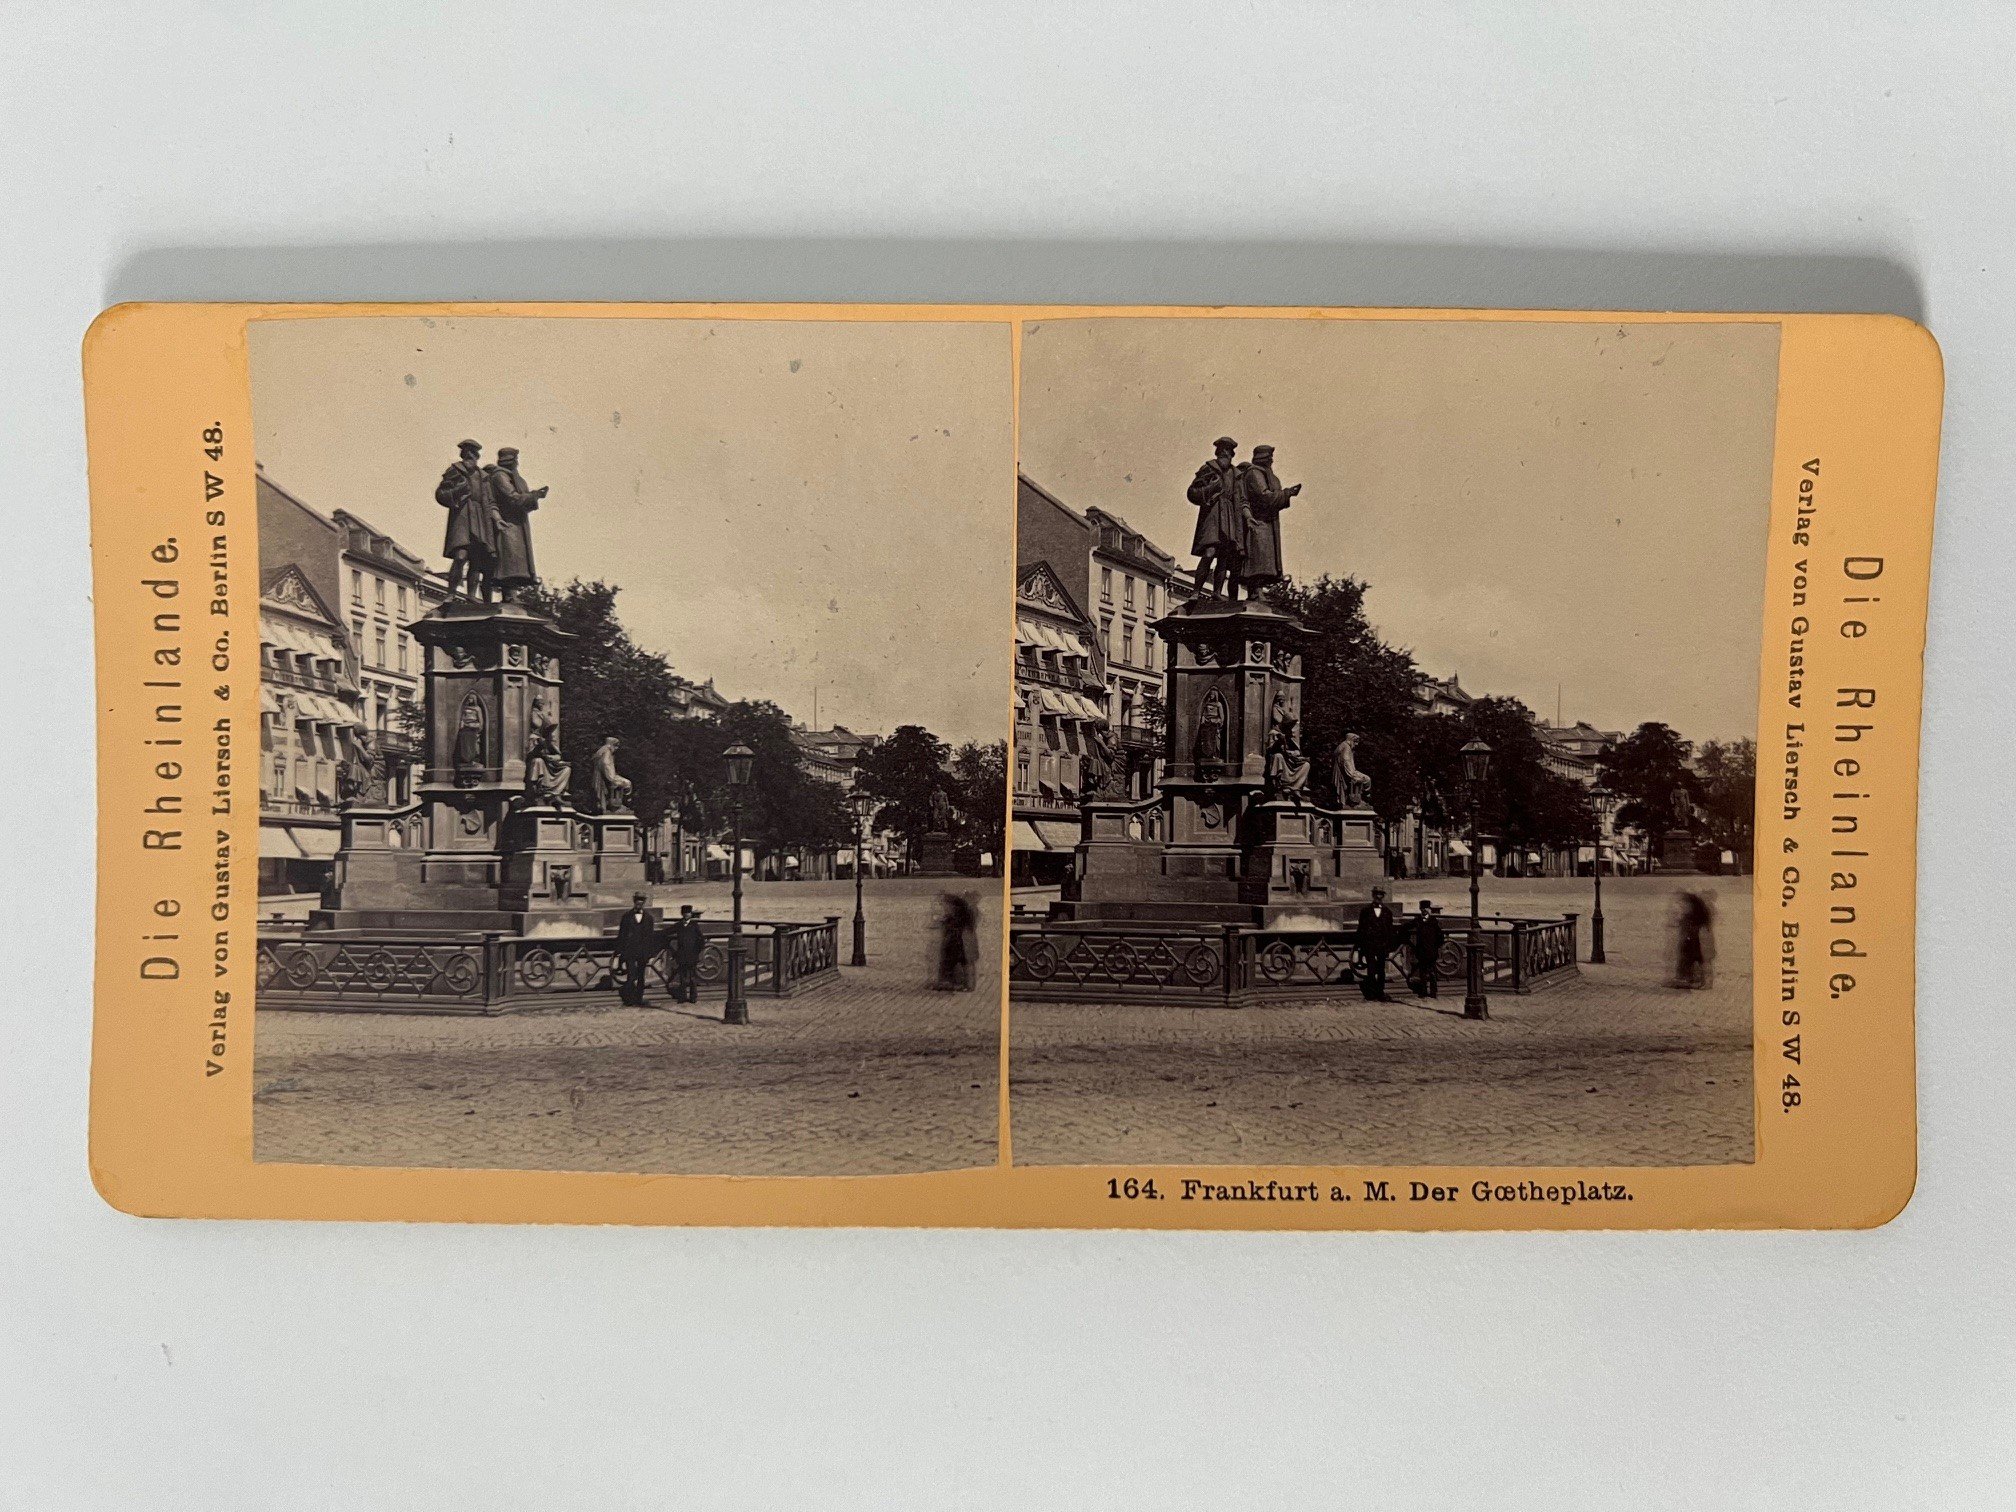 Stereobild, Verlag Gustav Liersch, Frankfurt, Nr. 164, Der Goetheplatz, ca. 1881. (Taunus-Rhein-Main - Regionalgeschichtliche Sammlung Dr. Stefan Naas CC BY-NC-SA)